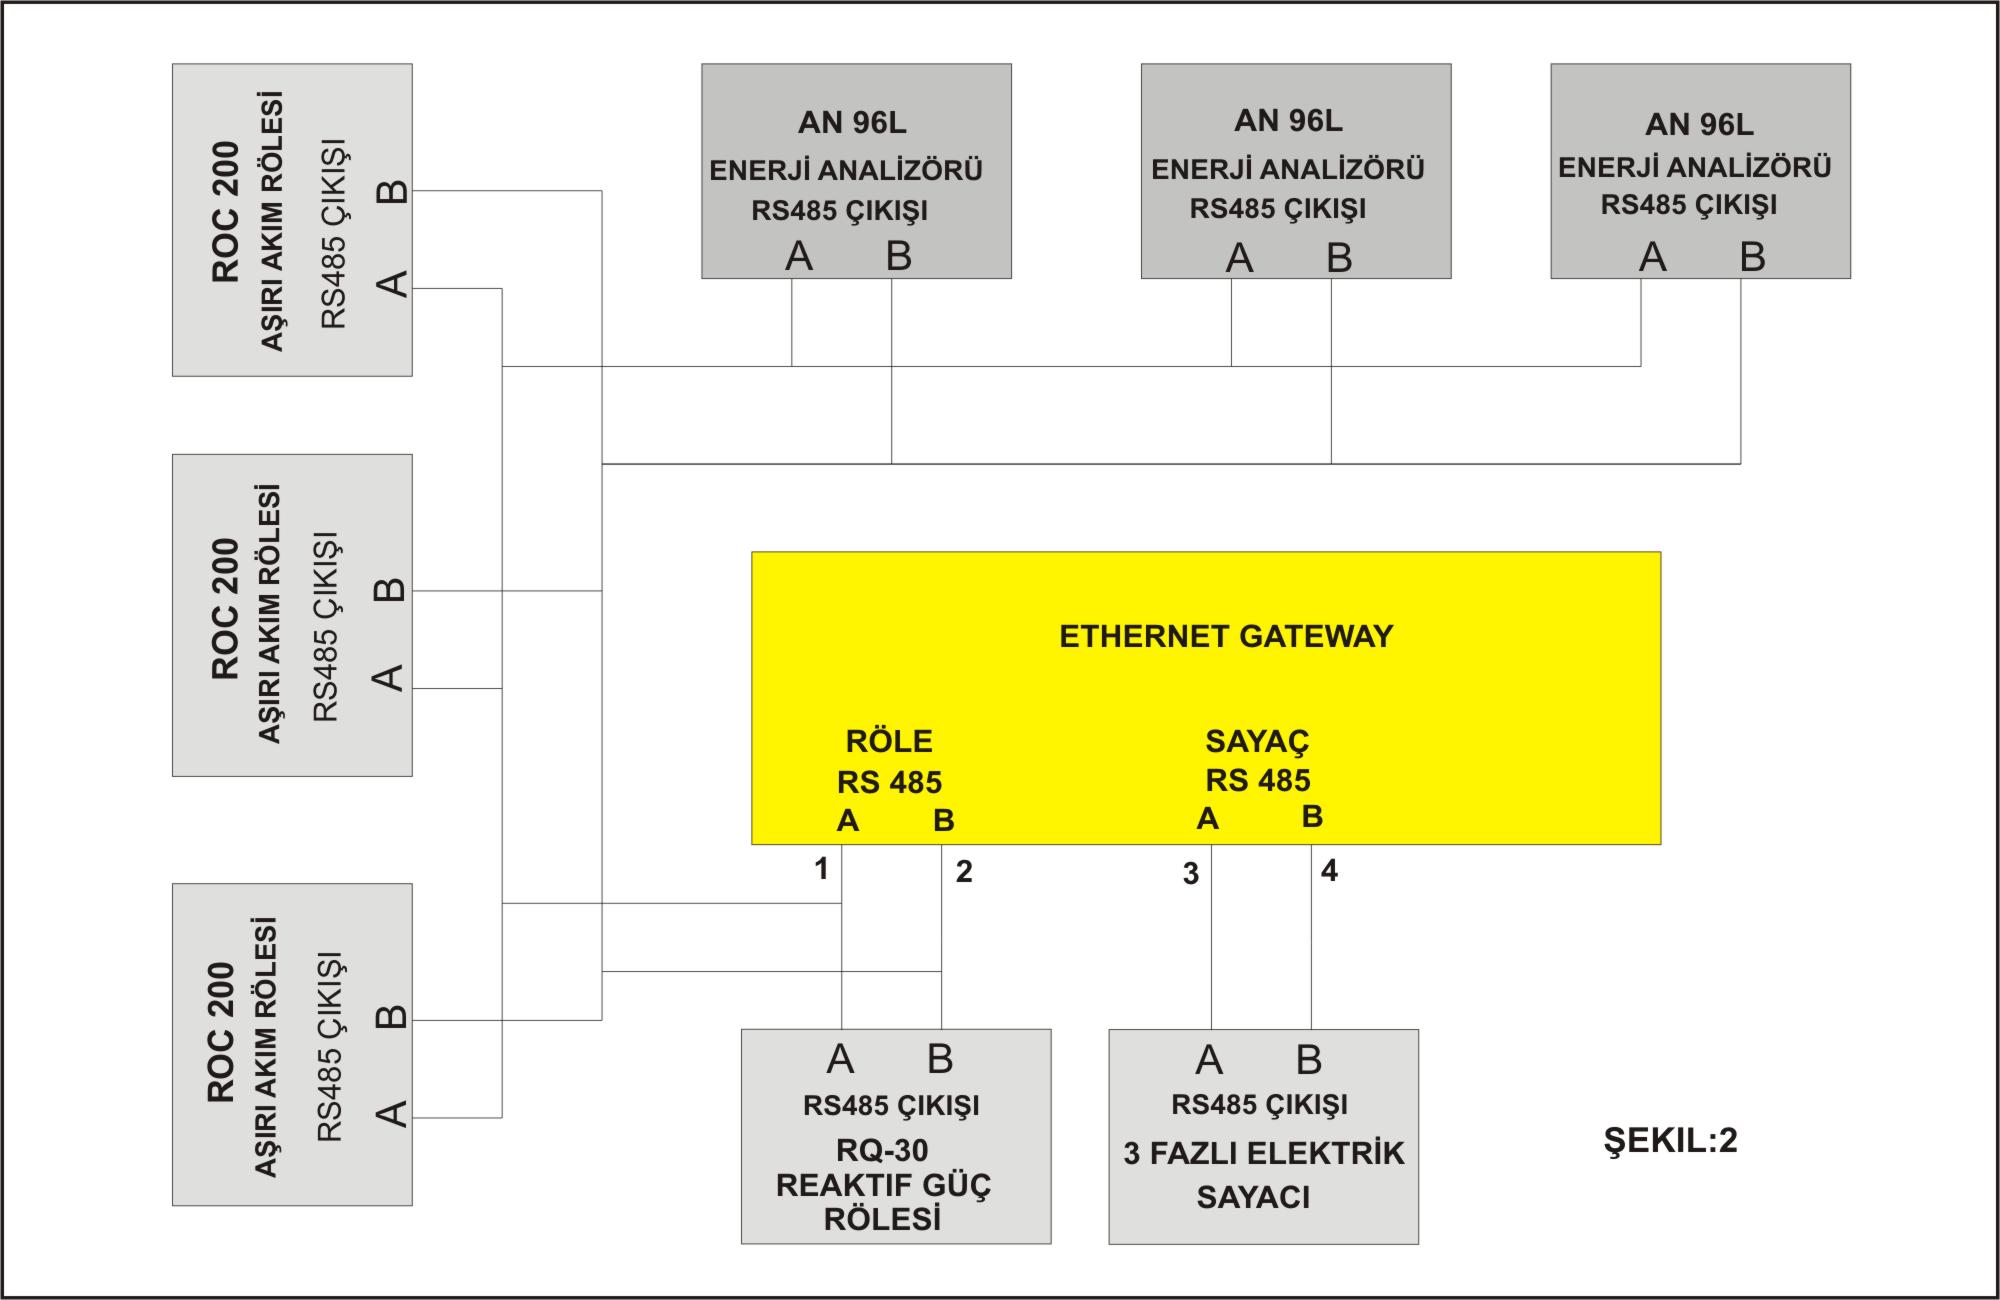 ETHERNET GATEWAY'in, "RÖLE RS 485" girişine, her 32 cihazda bir kuvvetlendirici kullanmak şartıyla toplam 247 cihaz bağlanabilir.